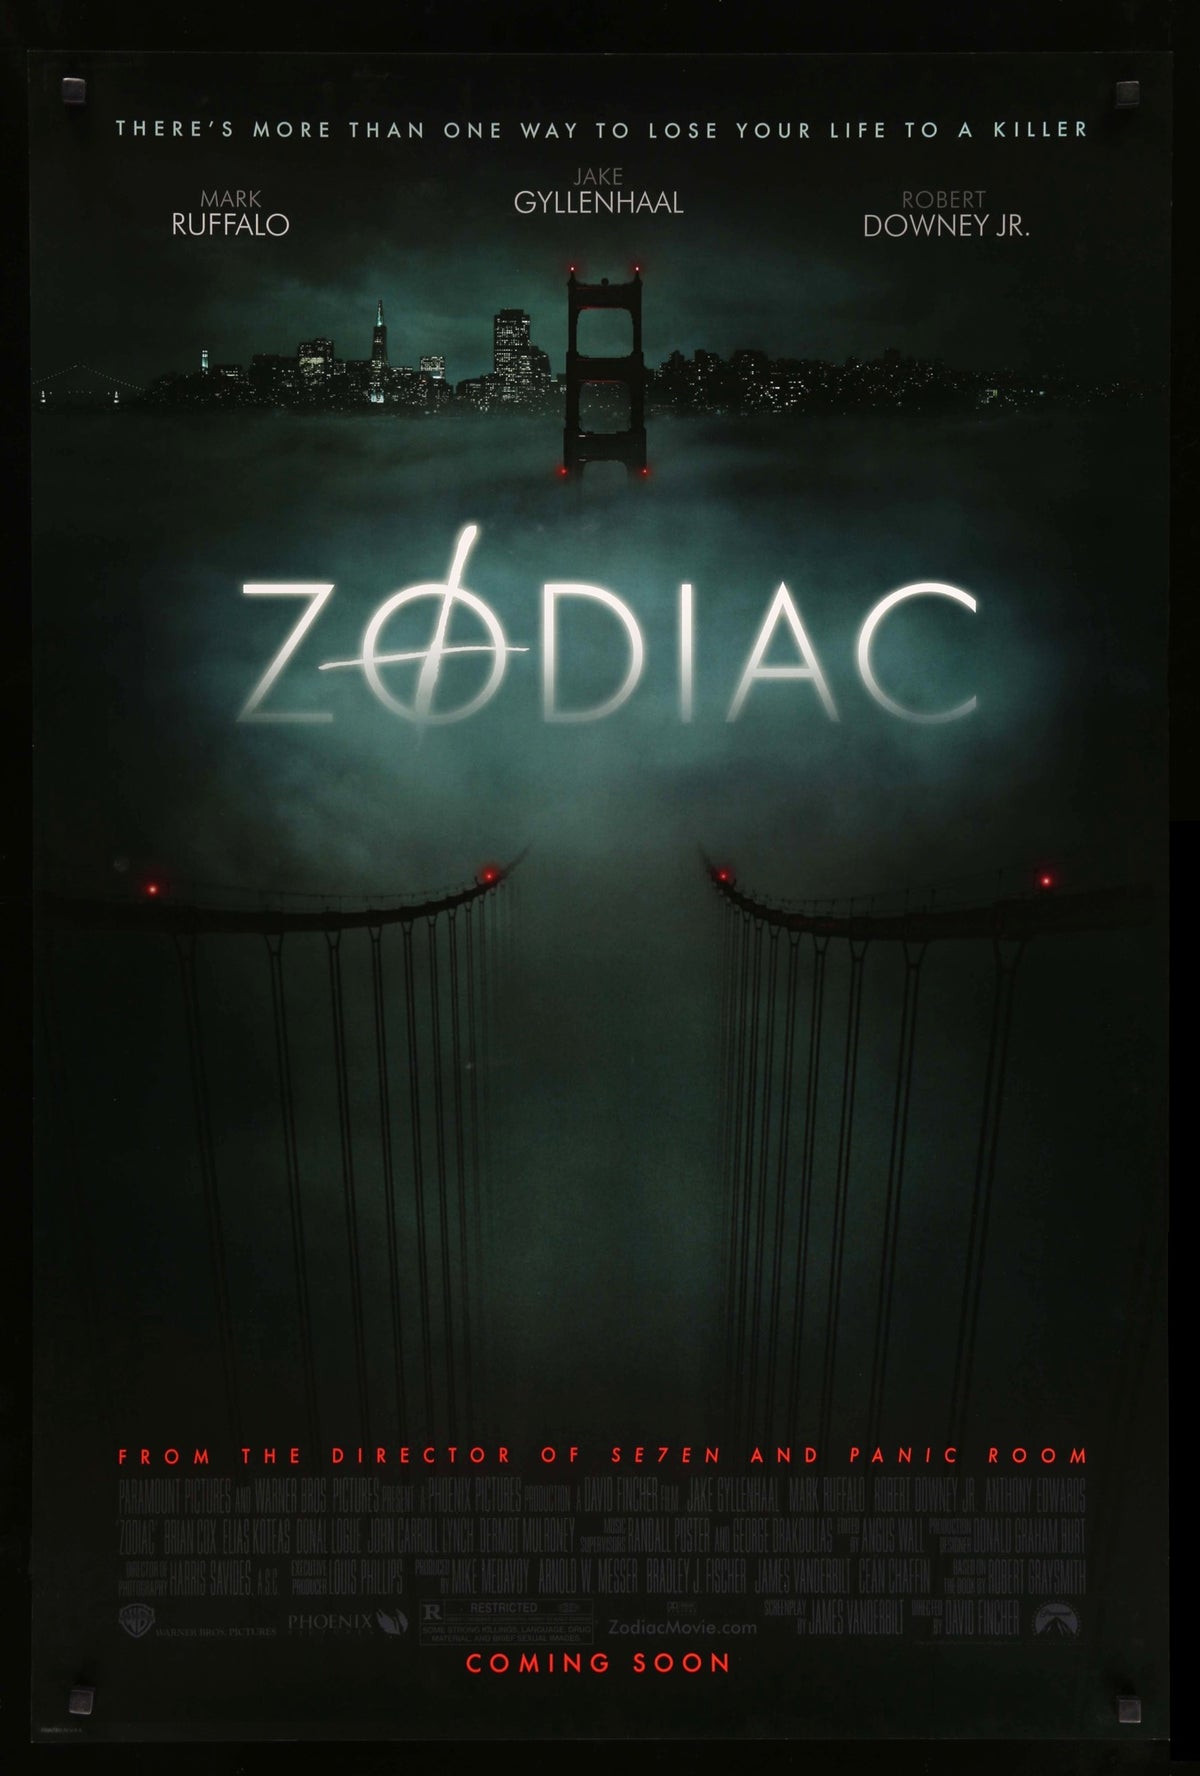 Zodiac (2007) original movie poster for sale at Original Film Art